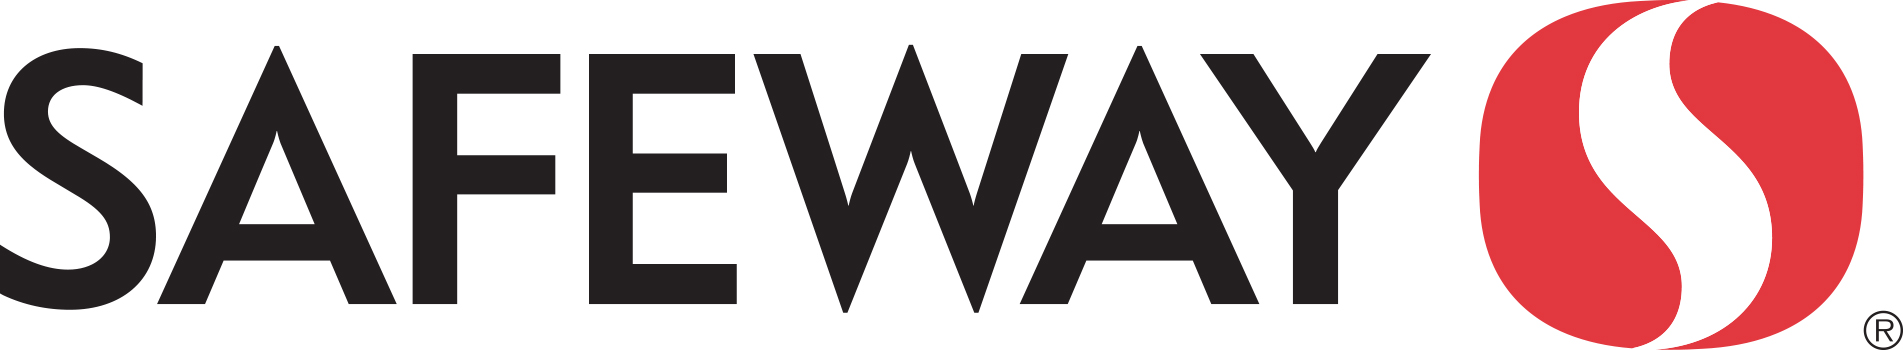 Safeway logo Horizontal (2).jpg